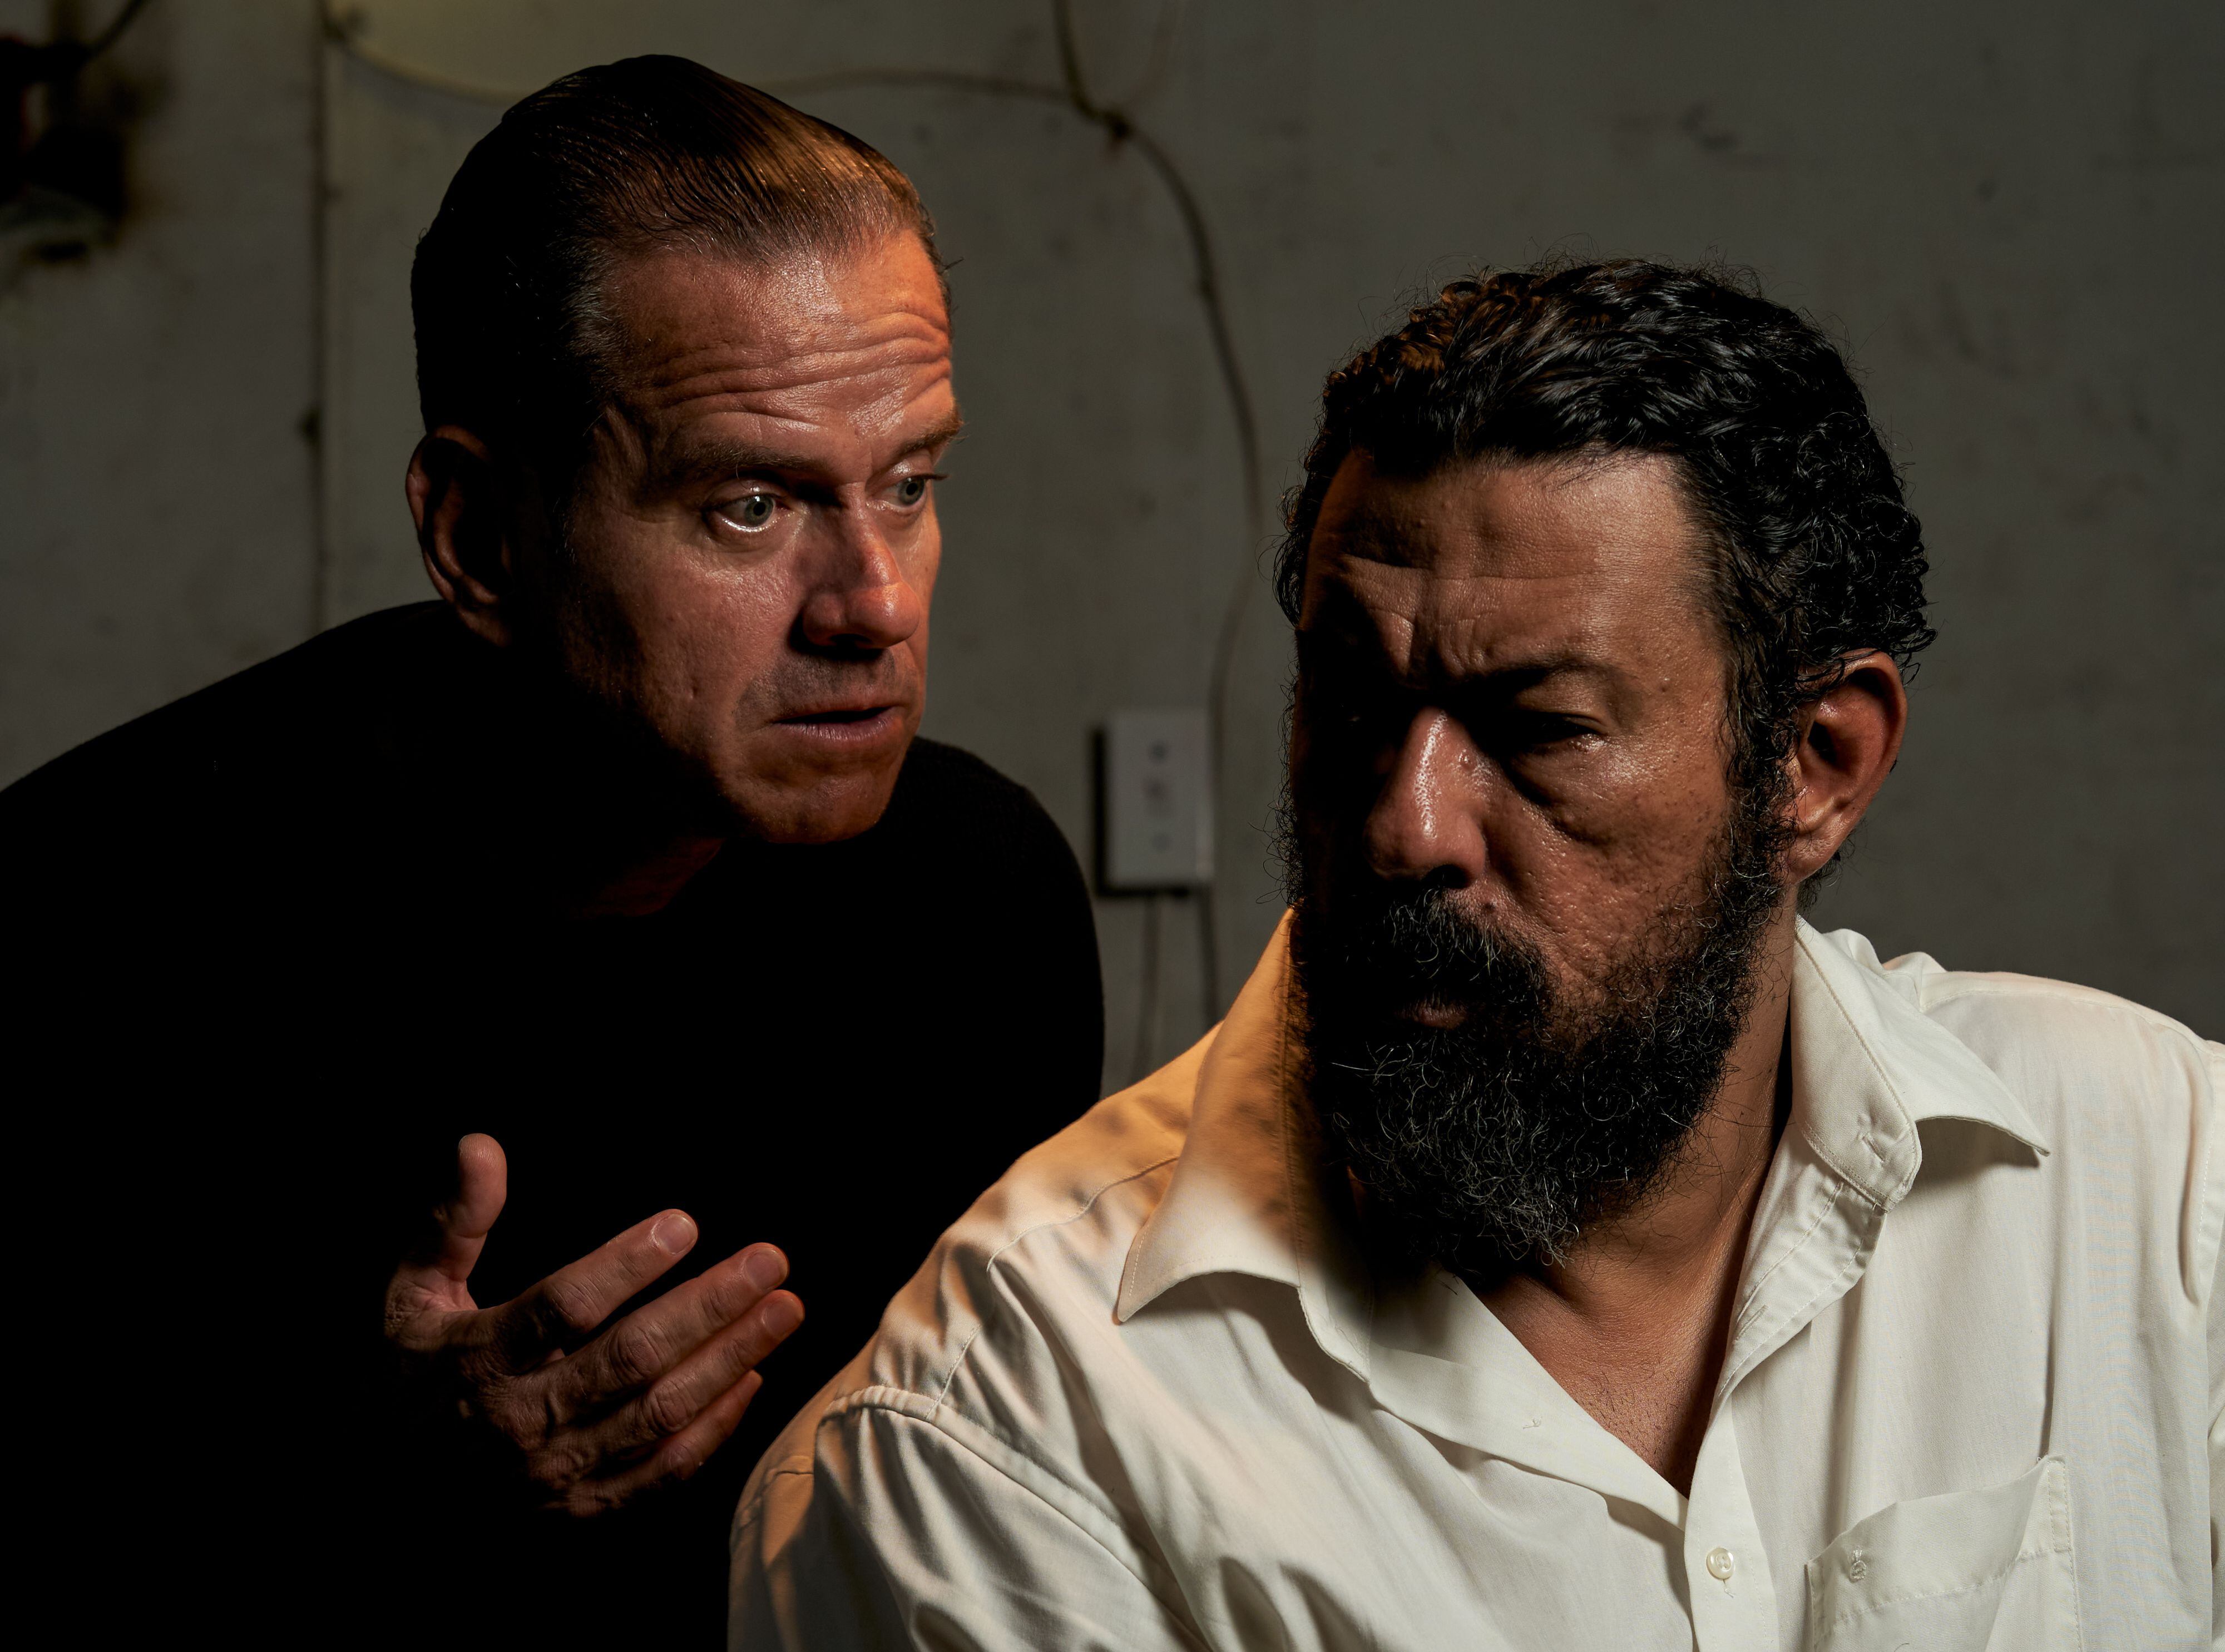 Antonio Rojas (Yago) y Jaime Newball (Otelo), durante un ensayo en Ciudad de Panamá.